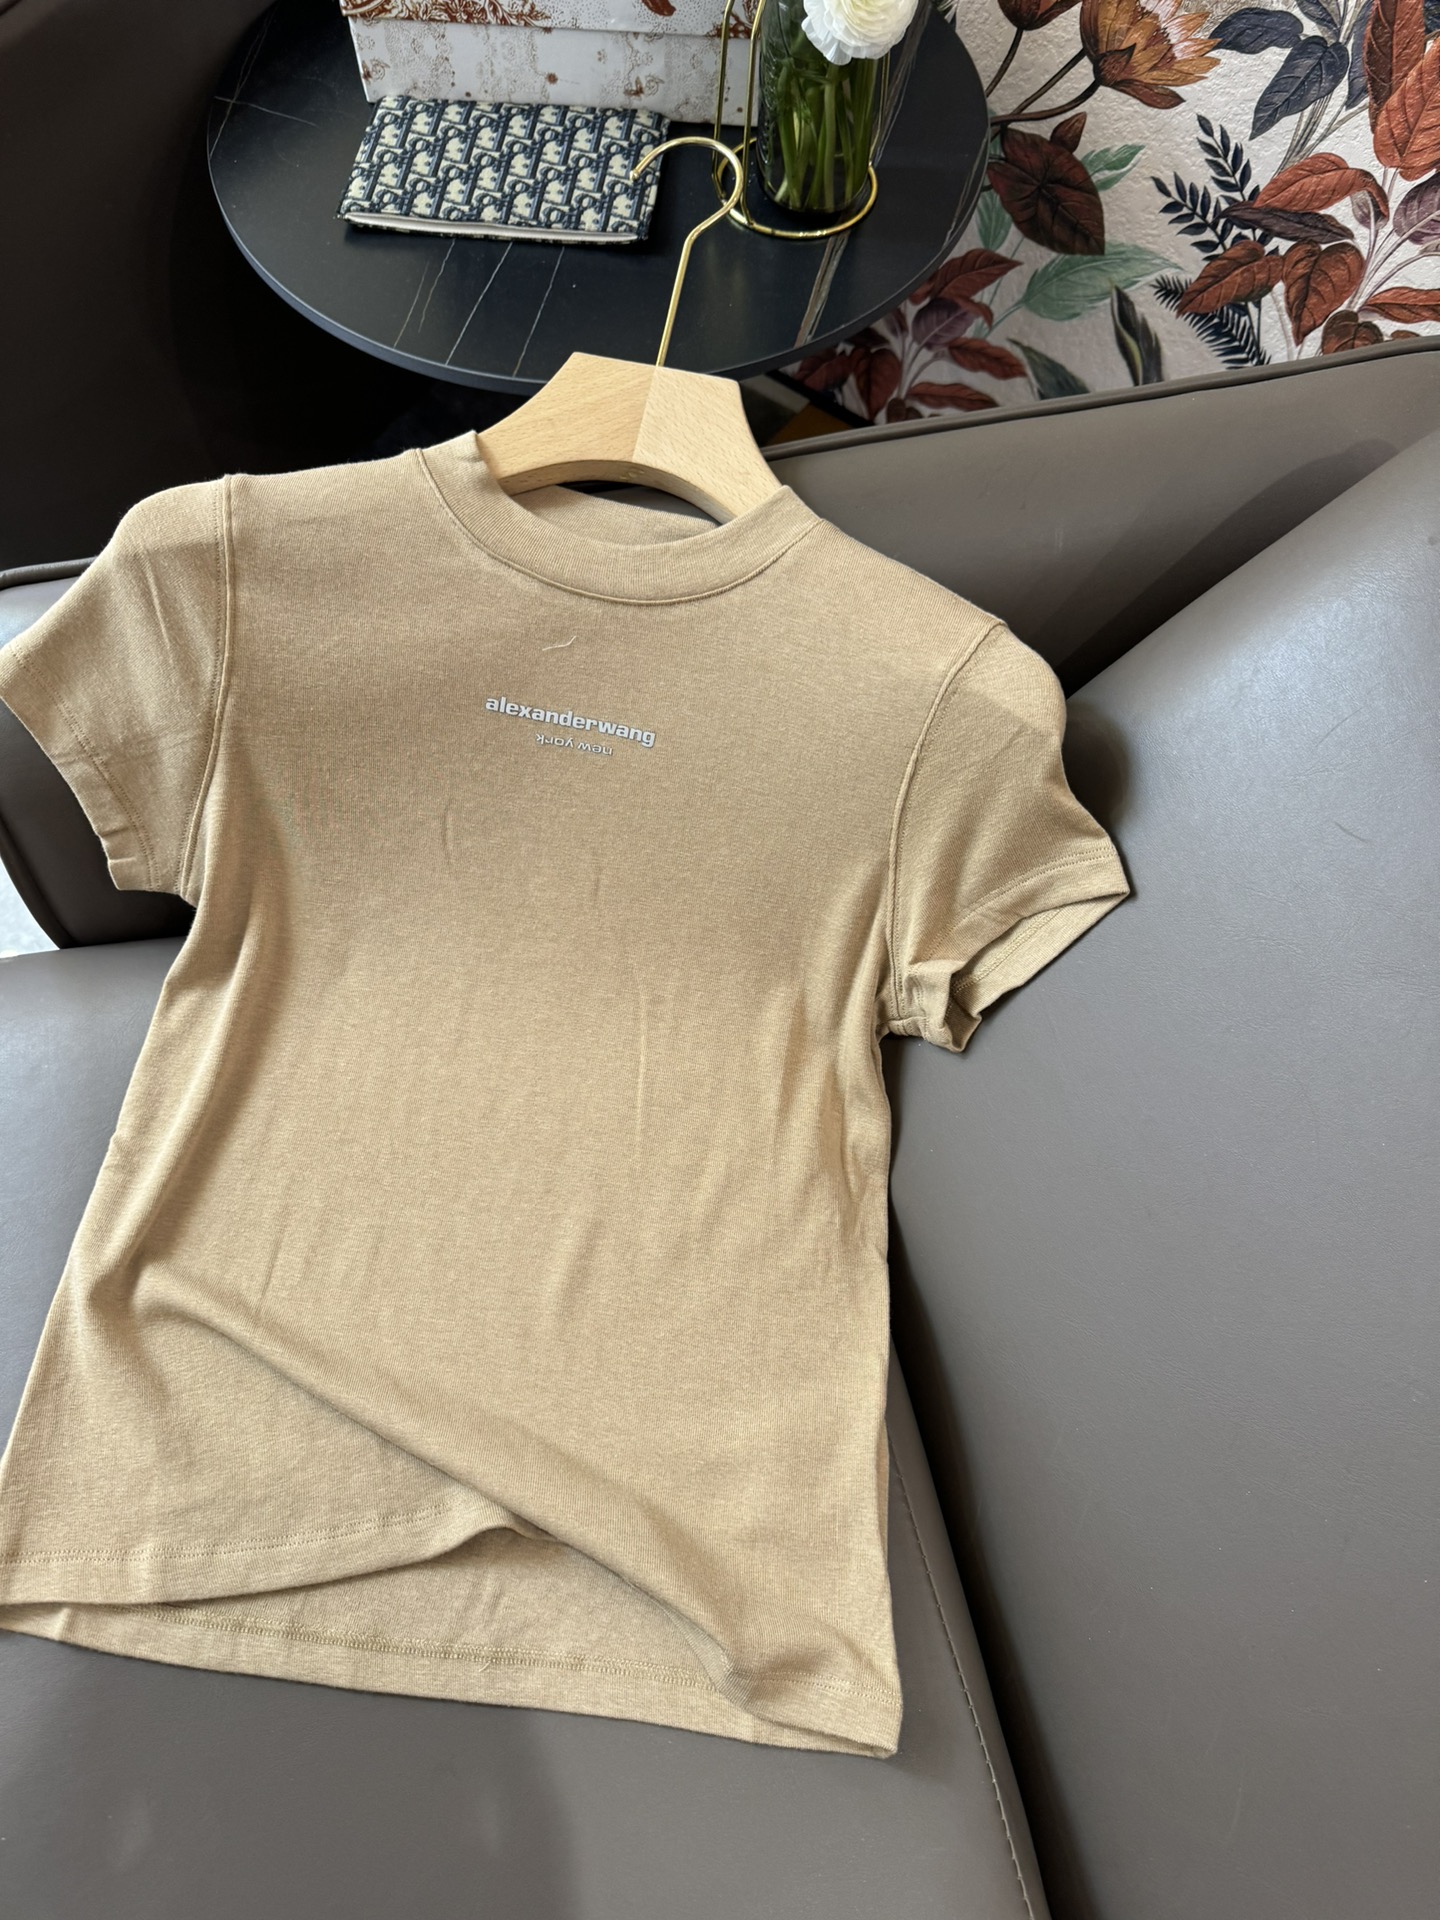 YJ012#新款T恤大王烫字母印花短袖修身显瘦T恤白色黑色杏色SML